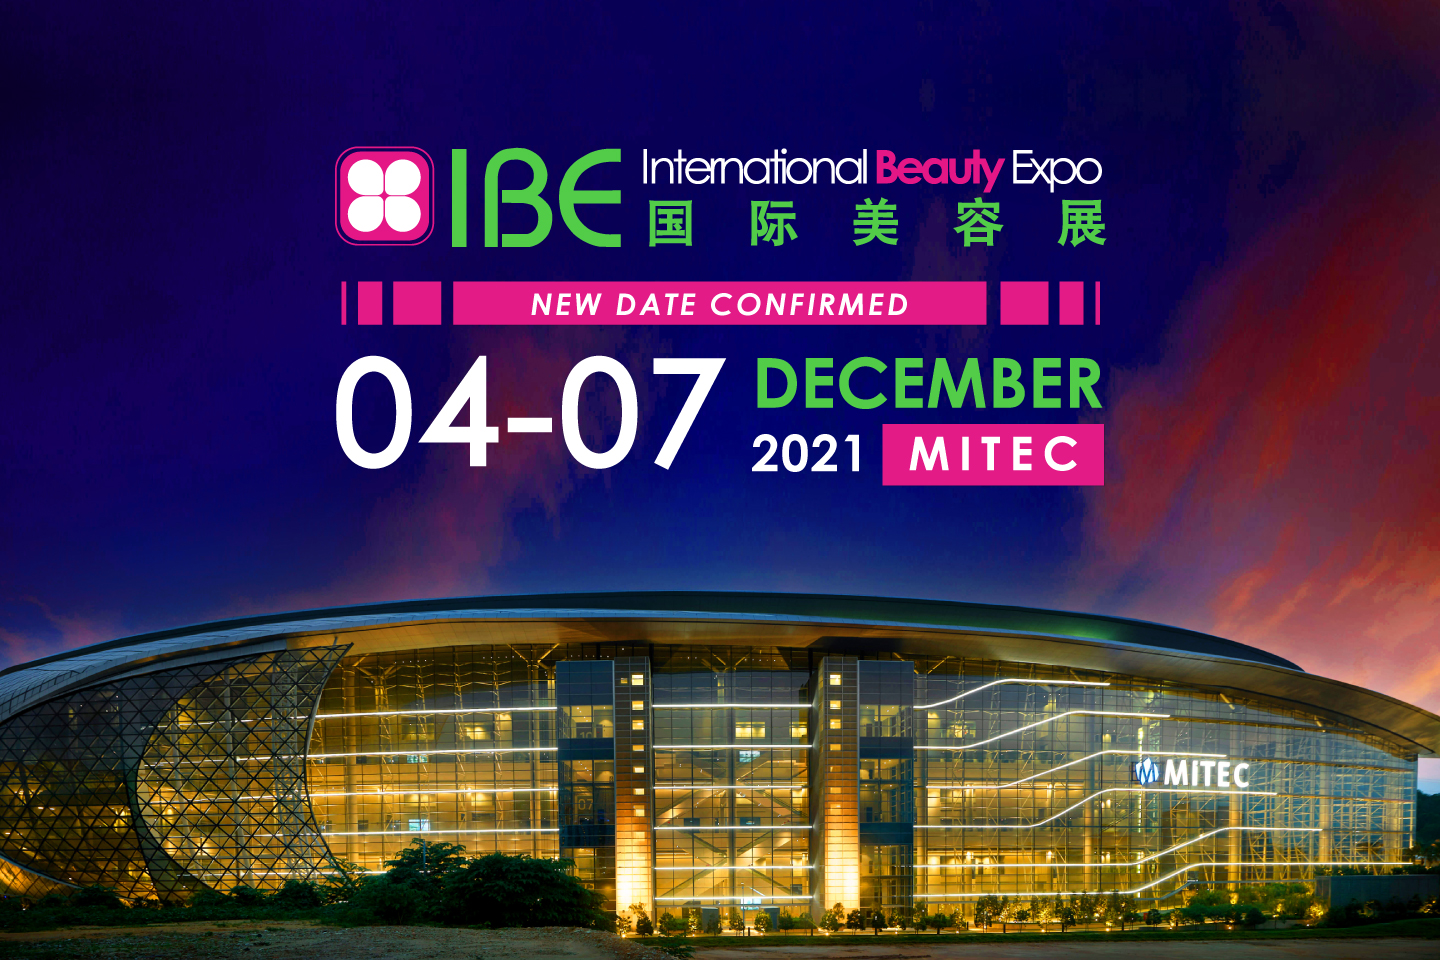 IBE International Beauty Expo 2021, Malaysia, Kuala Lumpur, Malaysia